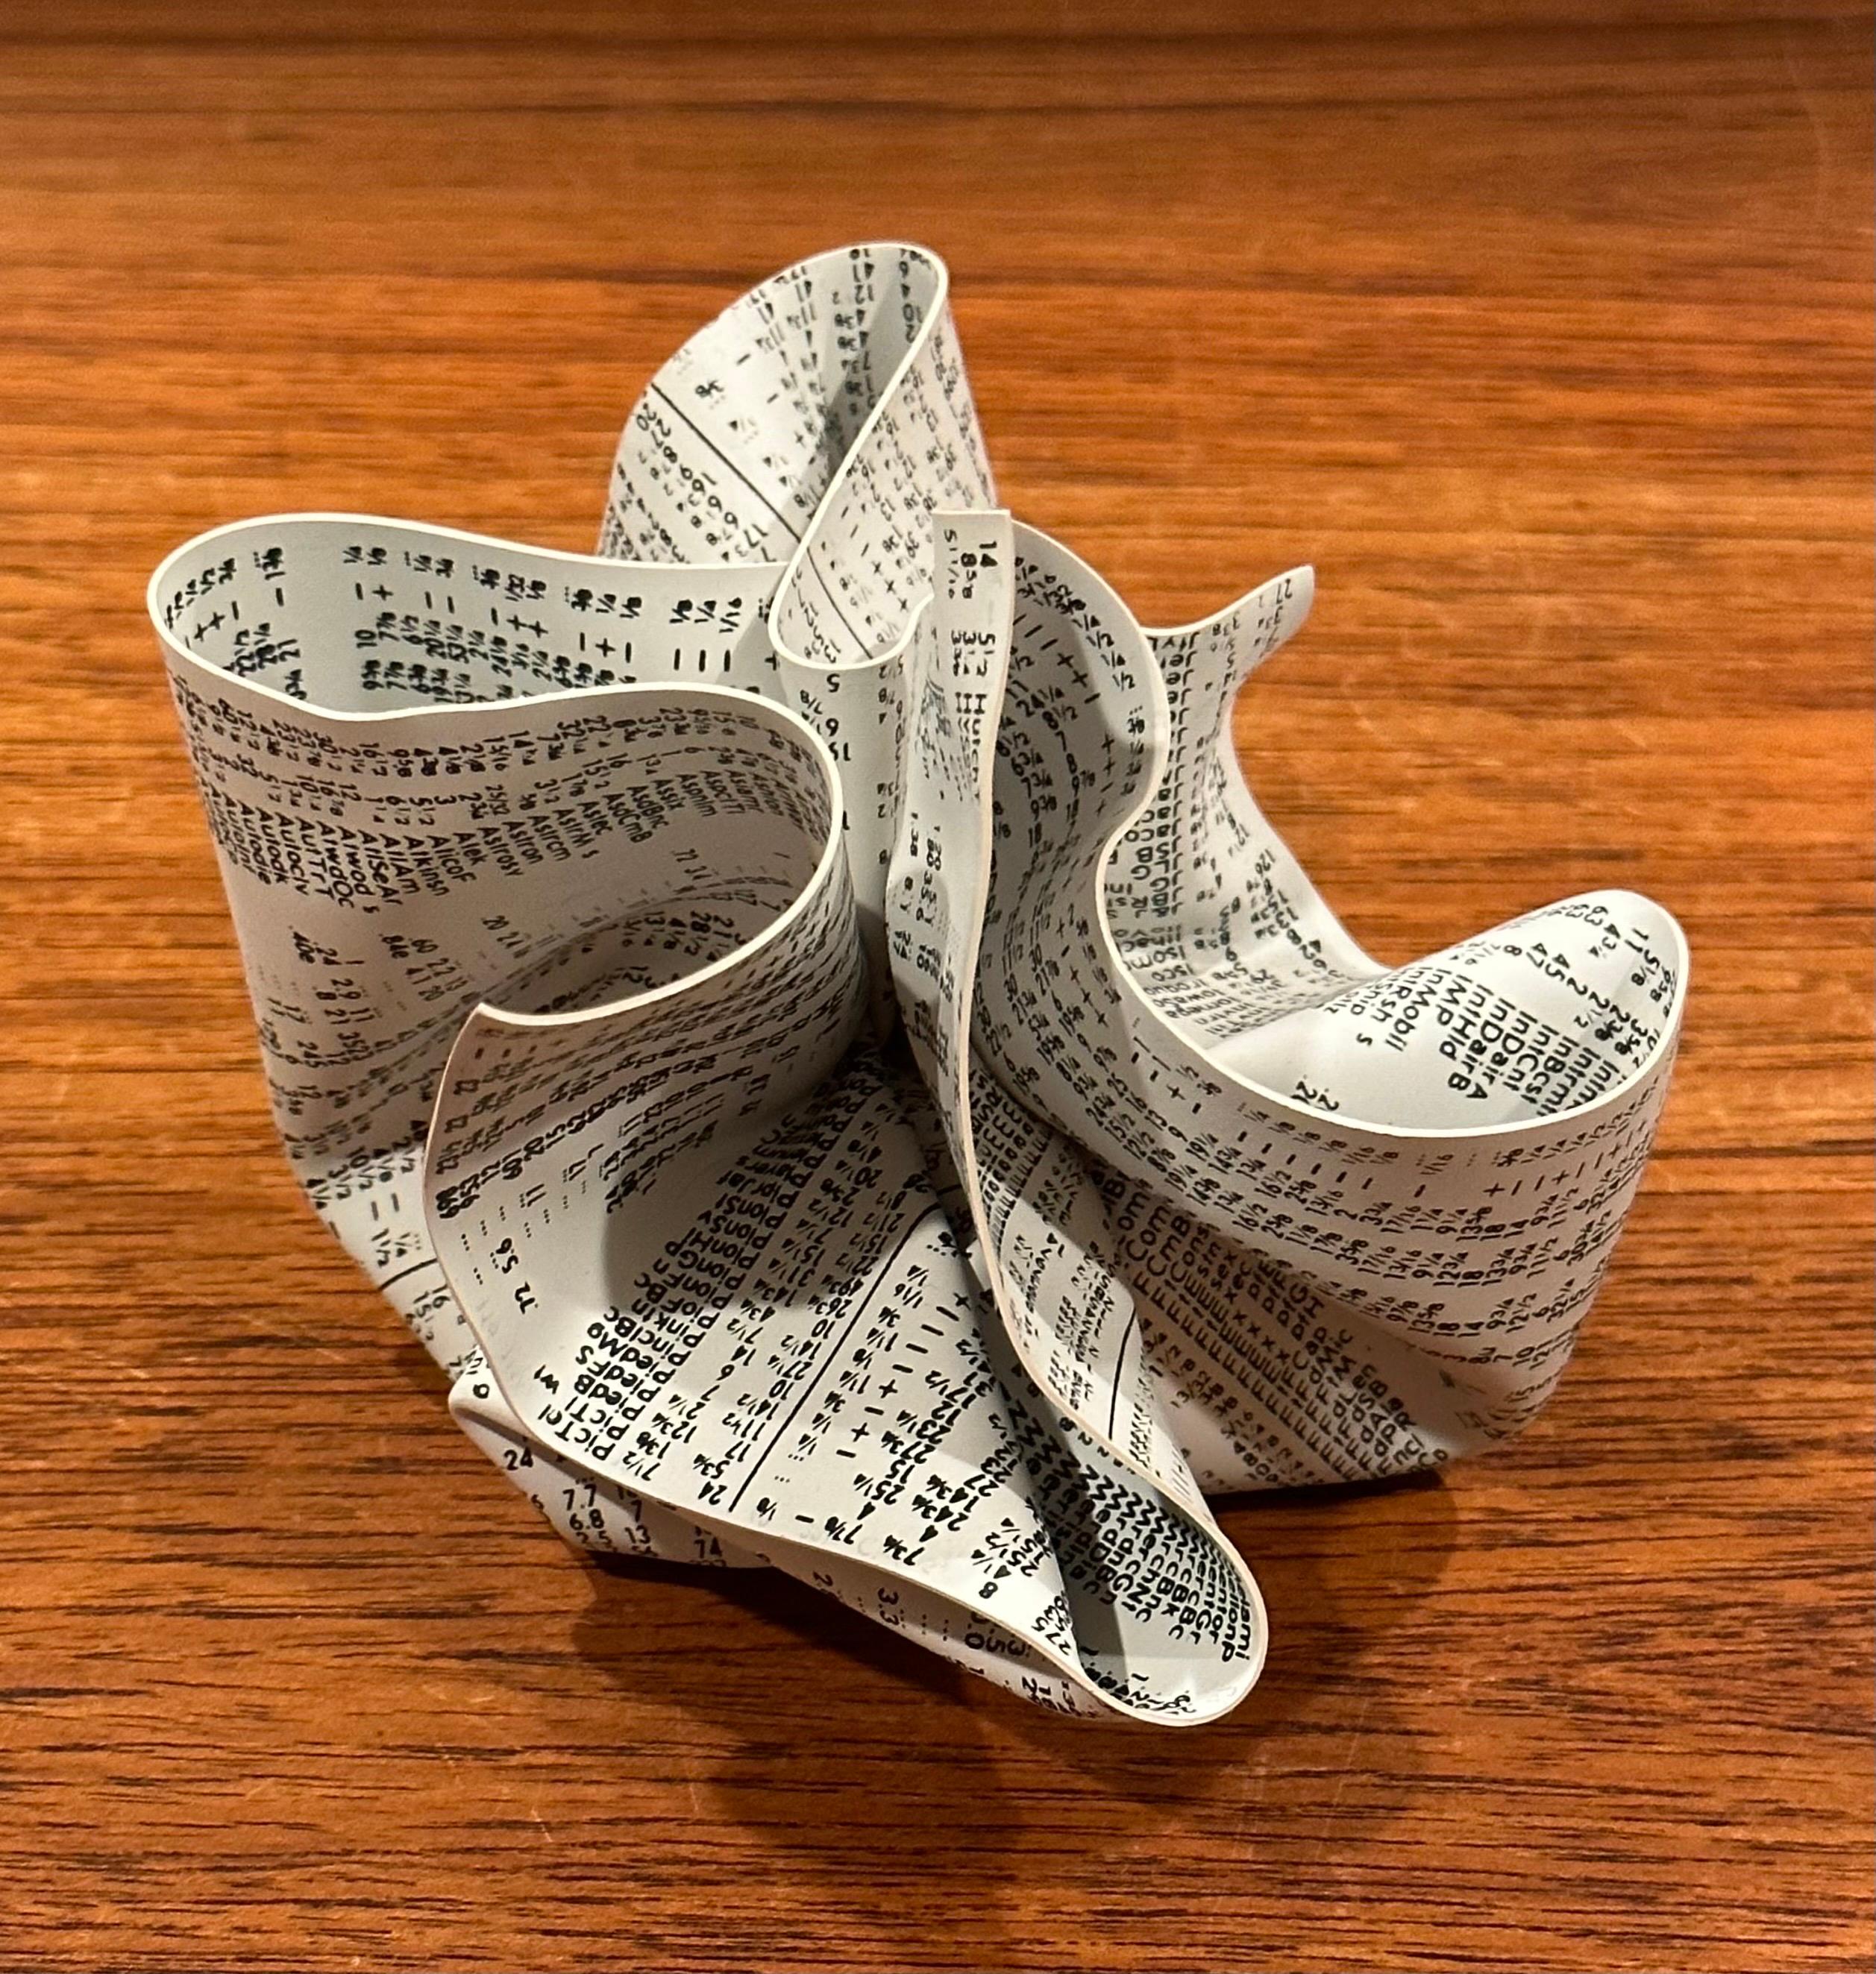 Ein sehr cooler zerknitterter WSJ/Zeitungs-Briefbeschwerer des Designers Tibor Kalman für M & Co. und MOMA, ca. 1980er Jahre.  Dieses dreidimensionale Kunstobjekt ist aus festem, siebbedrucktem Vinyl gefertigt, das eine Börsenzeitung zeigt, von Hand